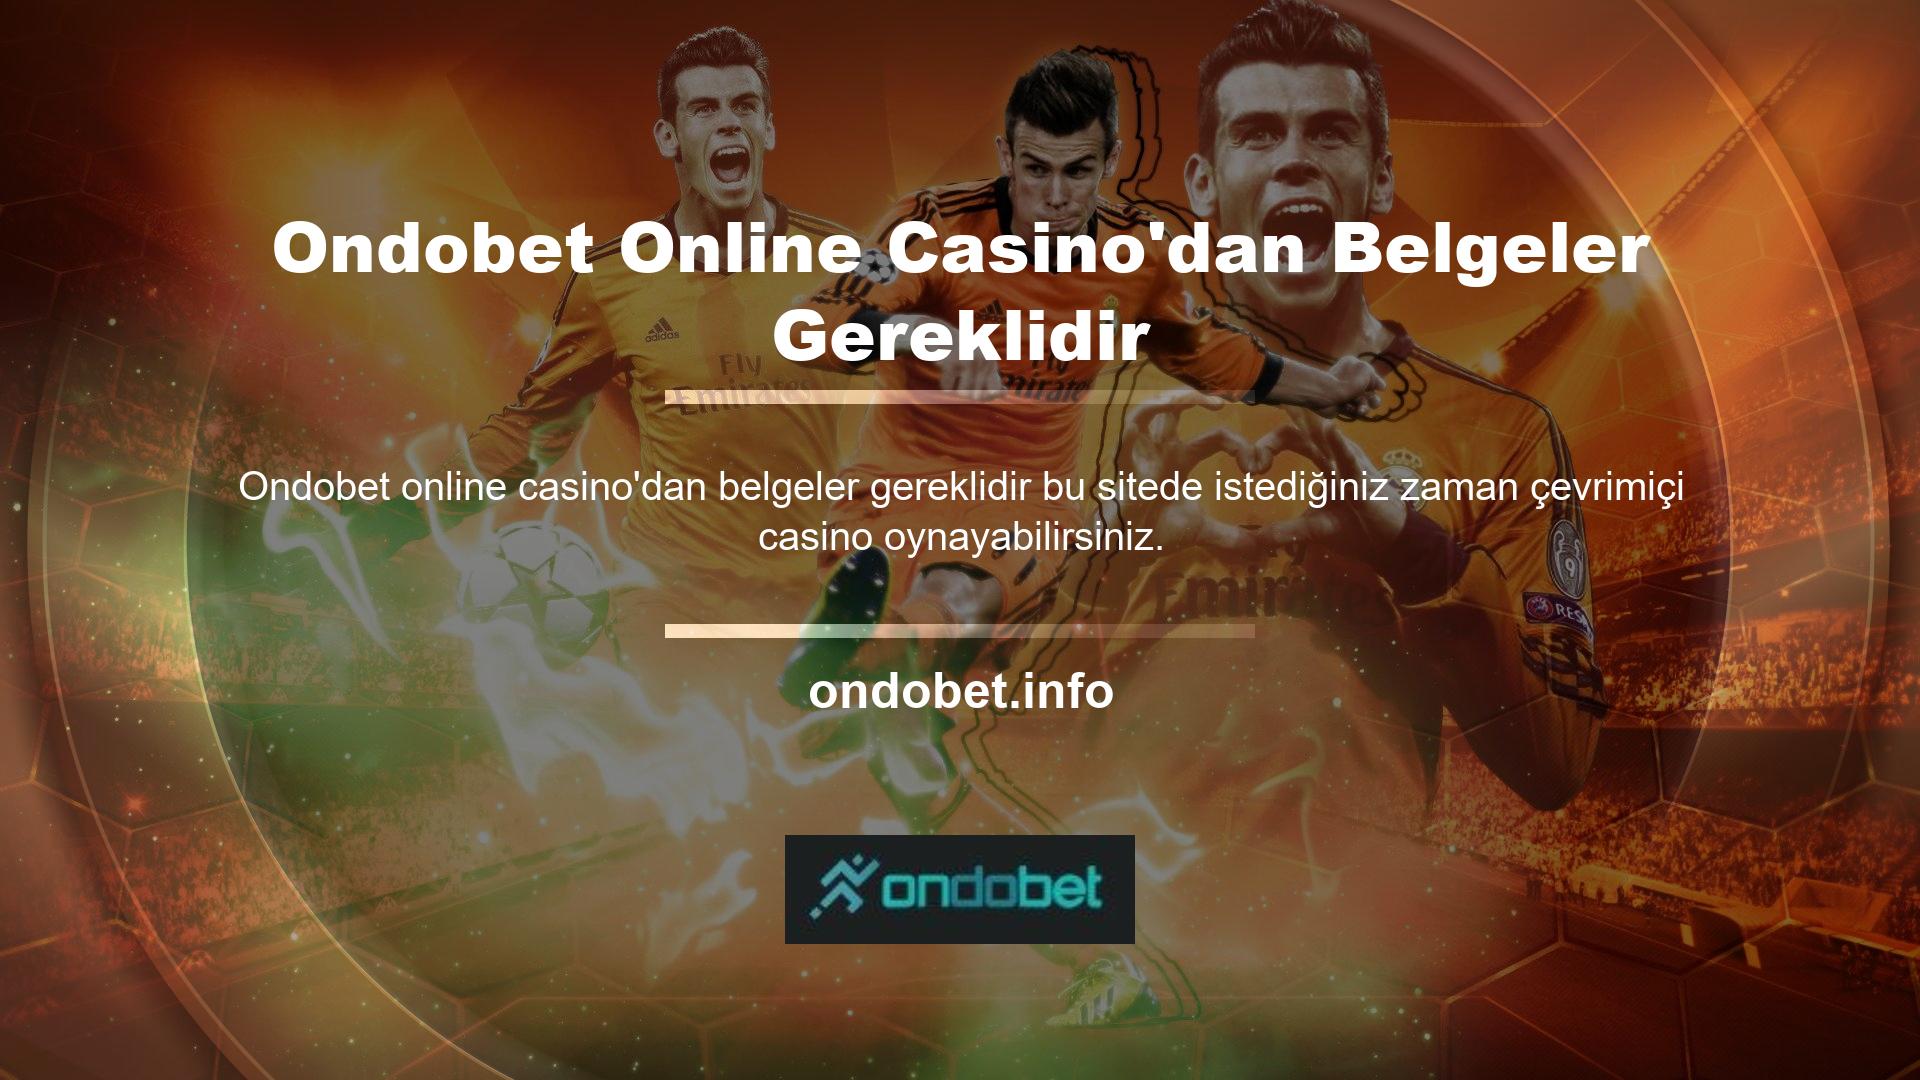 Ondobet Online Casino'da oynamak için ne yapmam gerekiyor? Tek yapmanız gereken üye olmak, hesap açmak ve hesabınıza para yatırmak